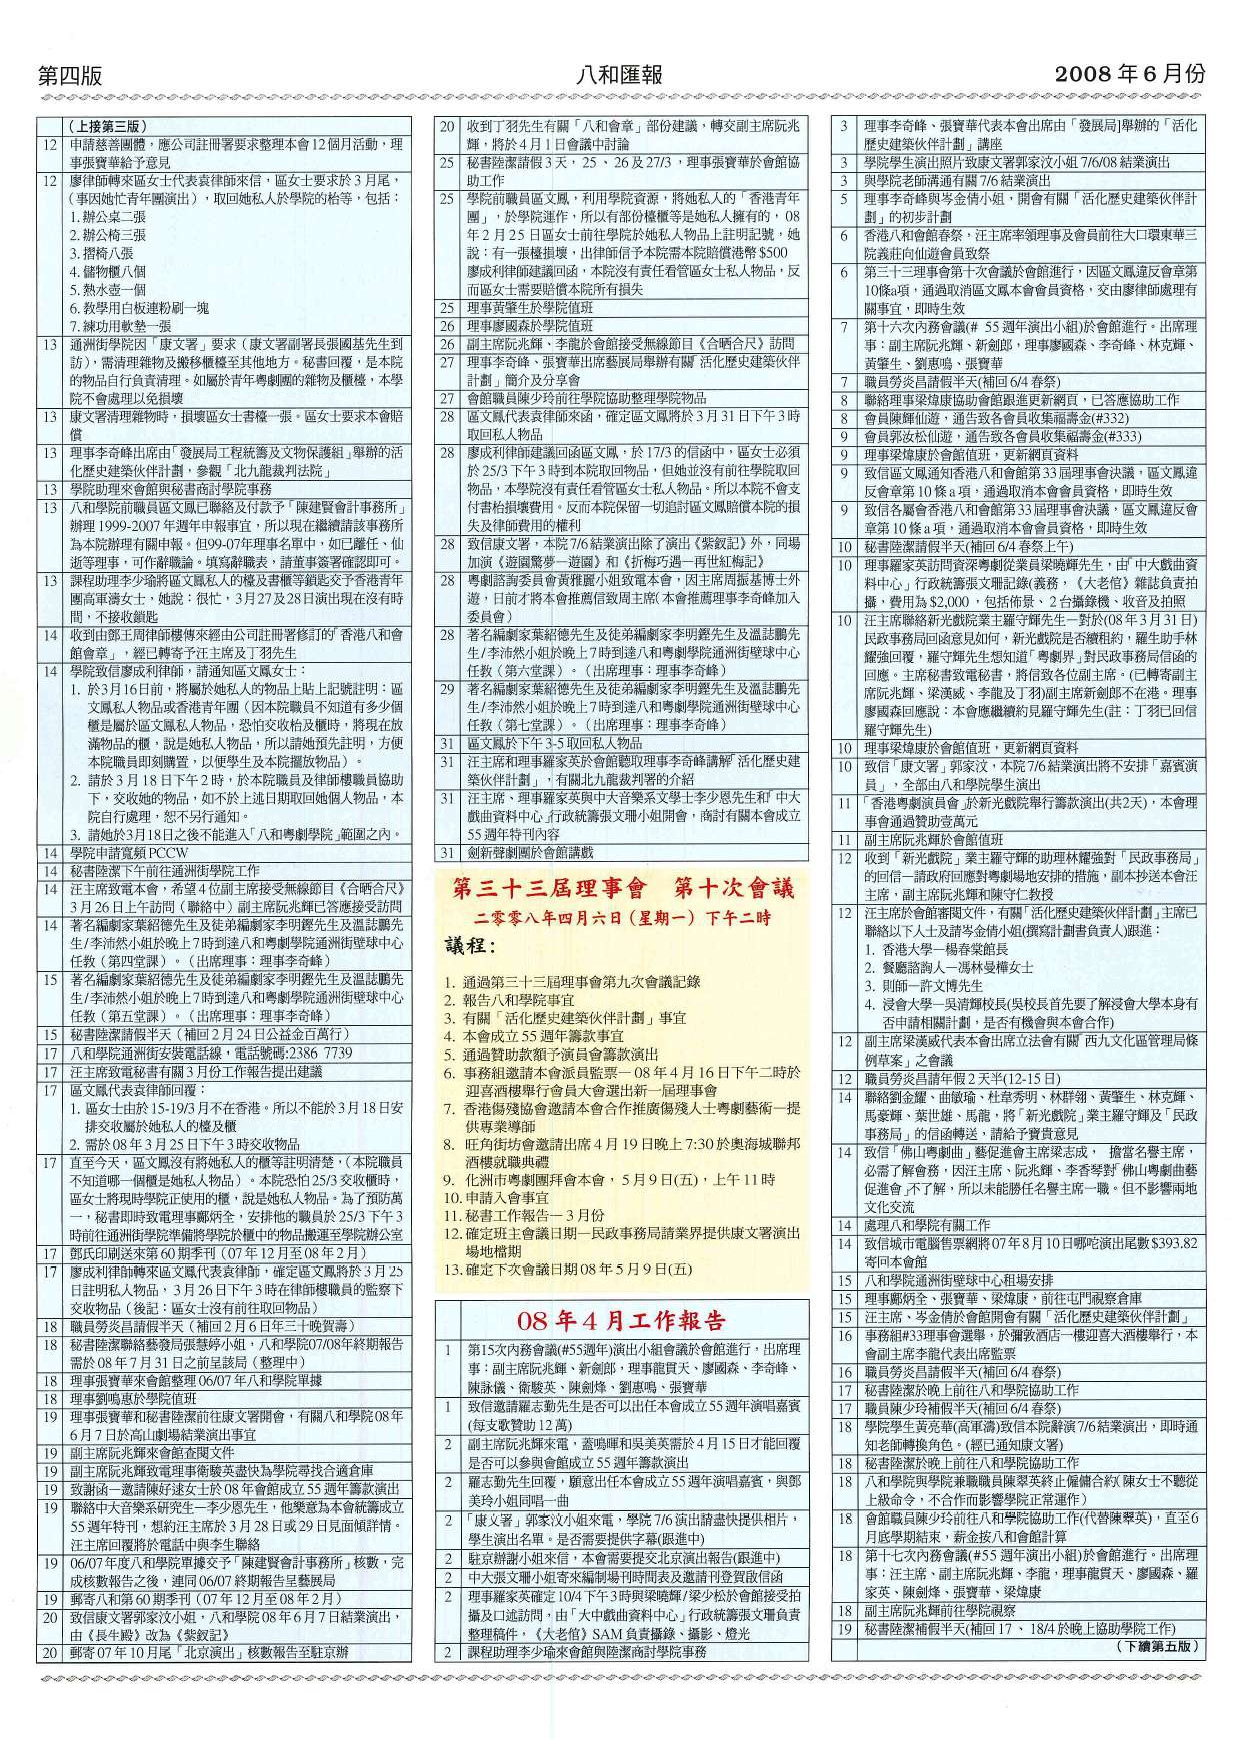 香港八和會館第三十三屆理事會第十次會議議程及辦公室報告（2008年4月）